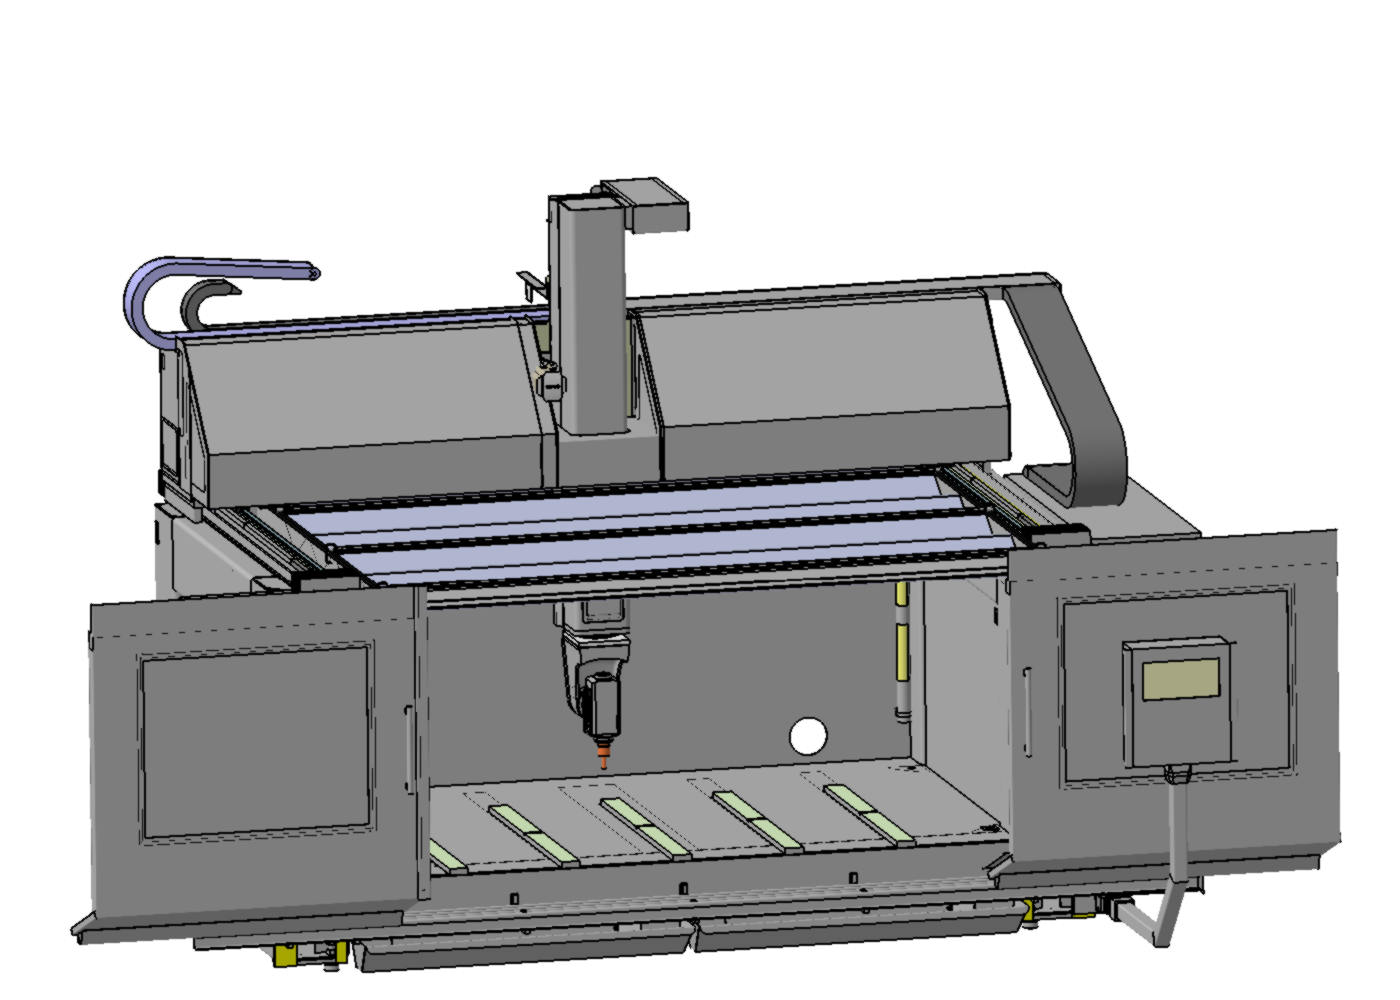 Portalfräsmaschine „EiMa Gamma S“ in Gantry-Bauweise